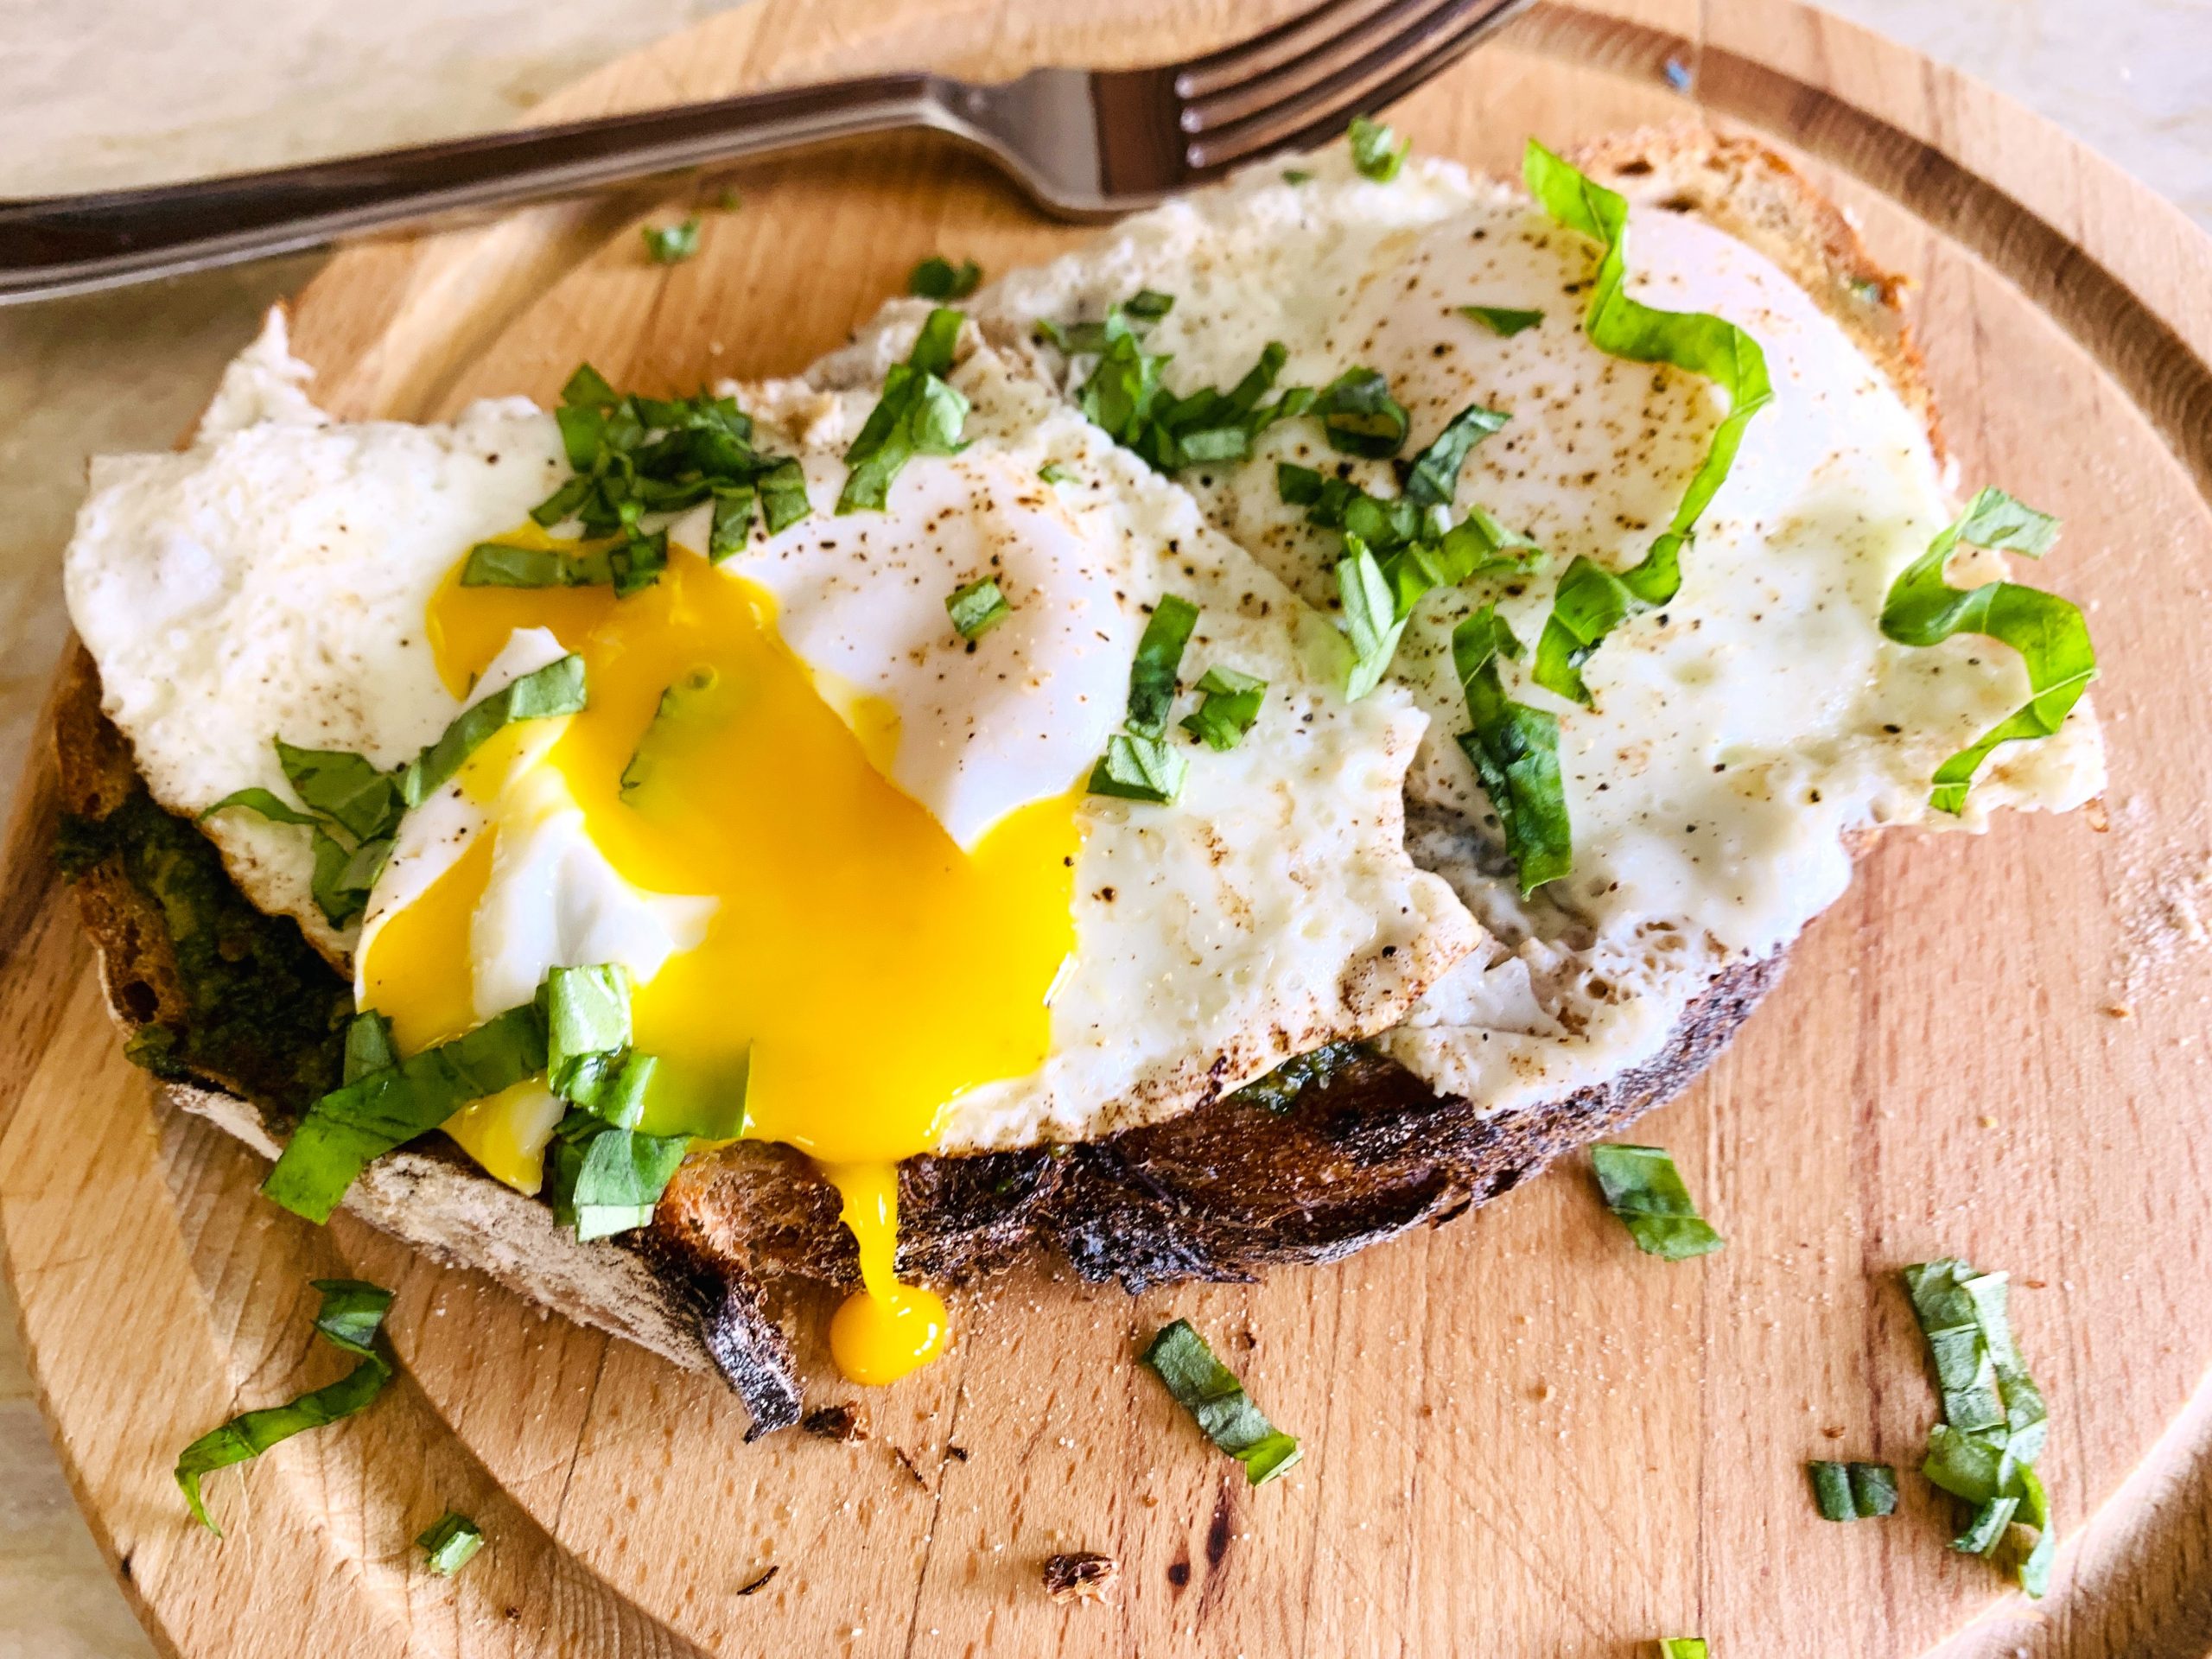 A torrada de ovo frito com molho pesto é um café da manhã rápido e fácil em qualquer dia da semana.